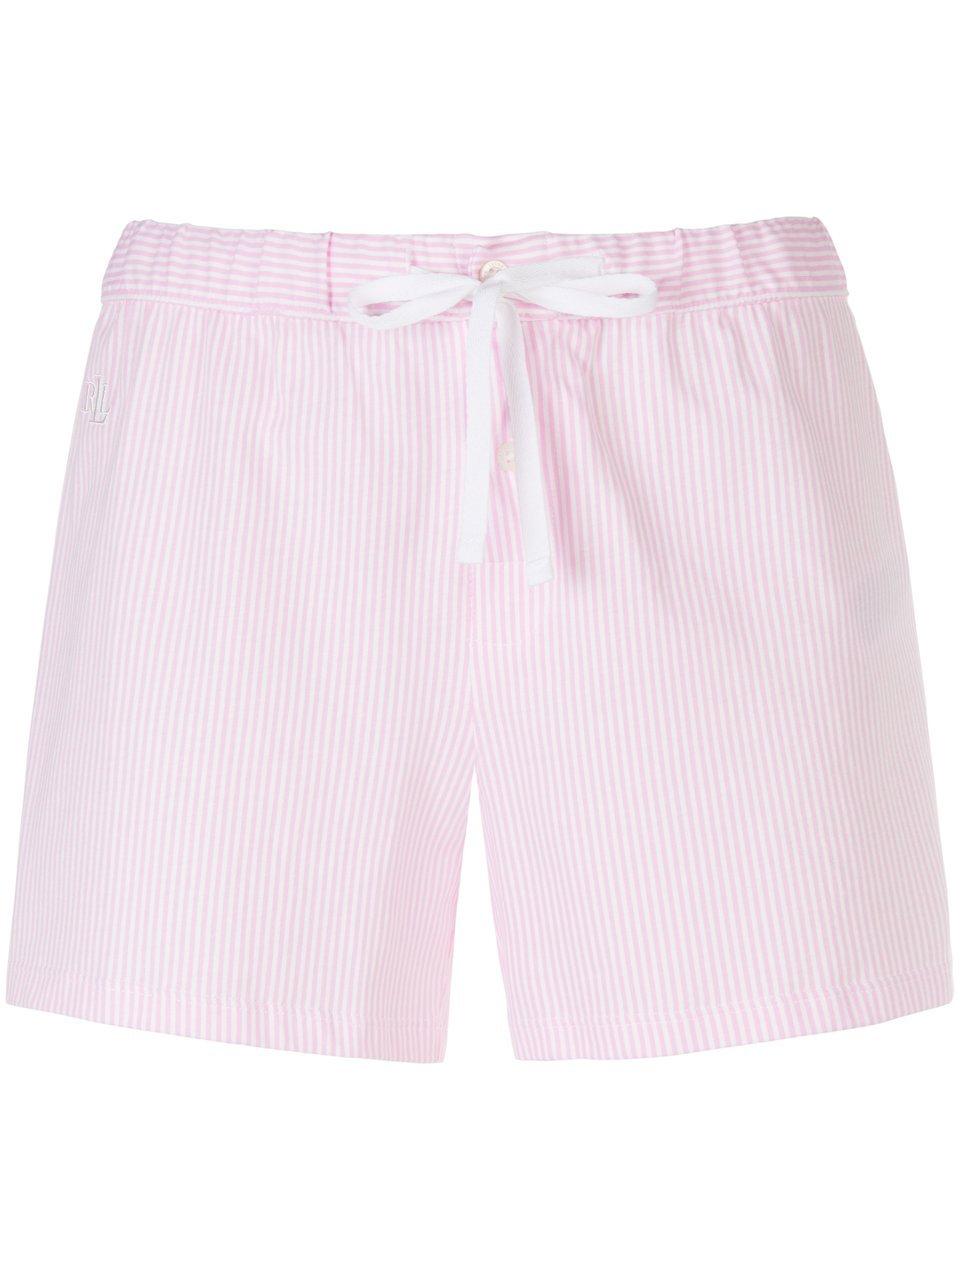 Pyjamashort 100% katoen Van Lauren Ralph Lauren roze